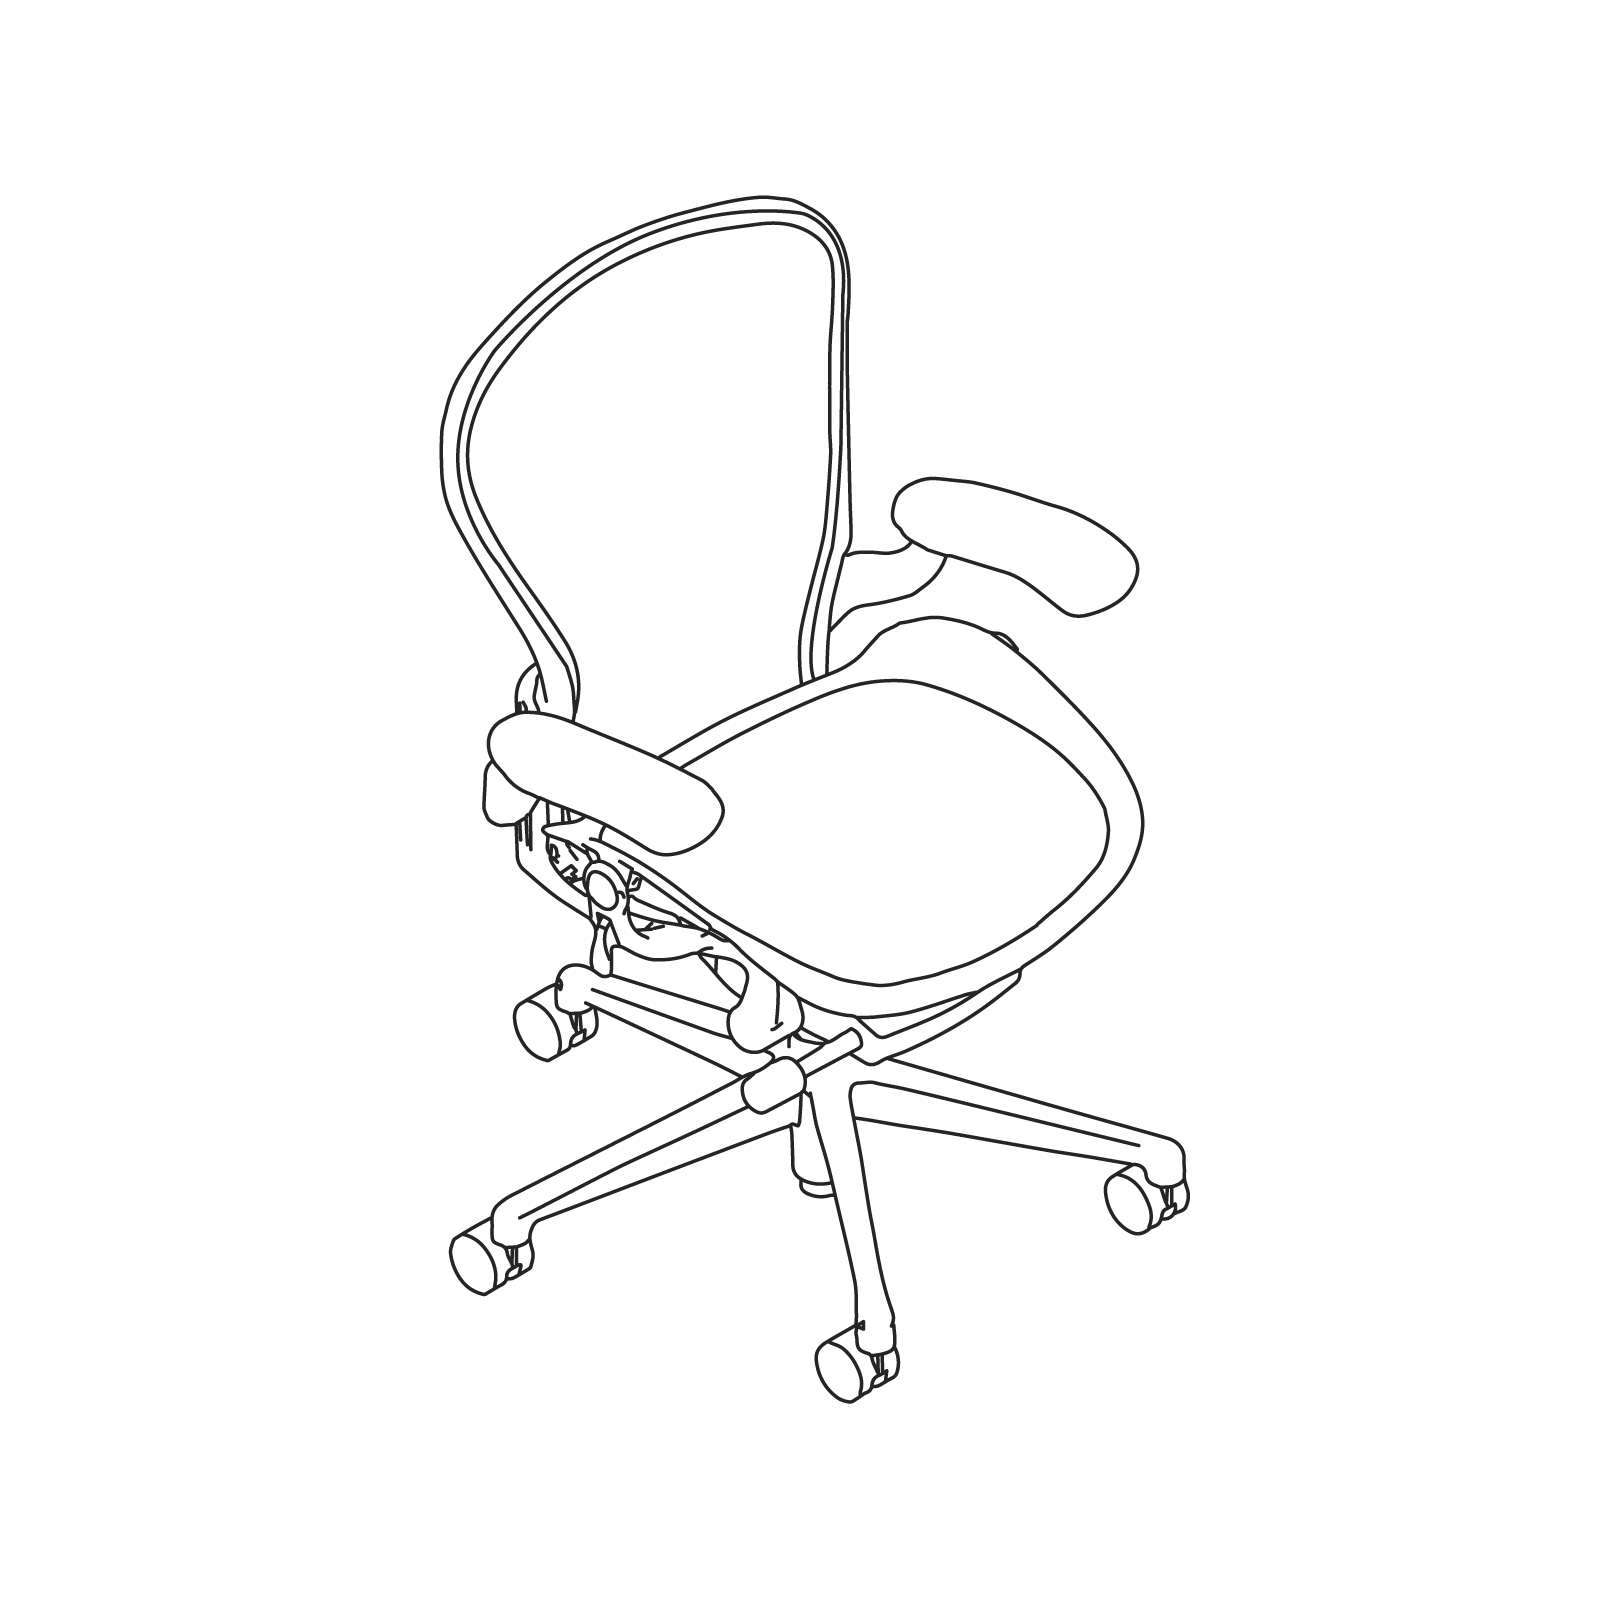 线描图 - Aeron座椅–B款–固定扶手